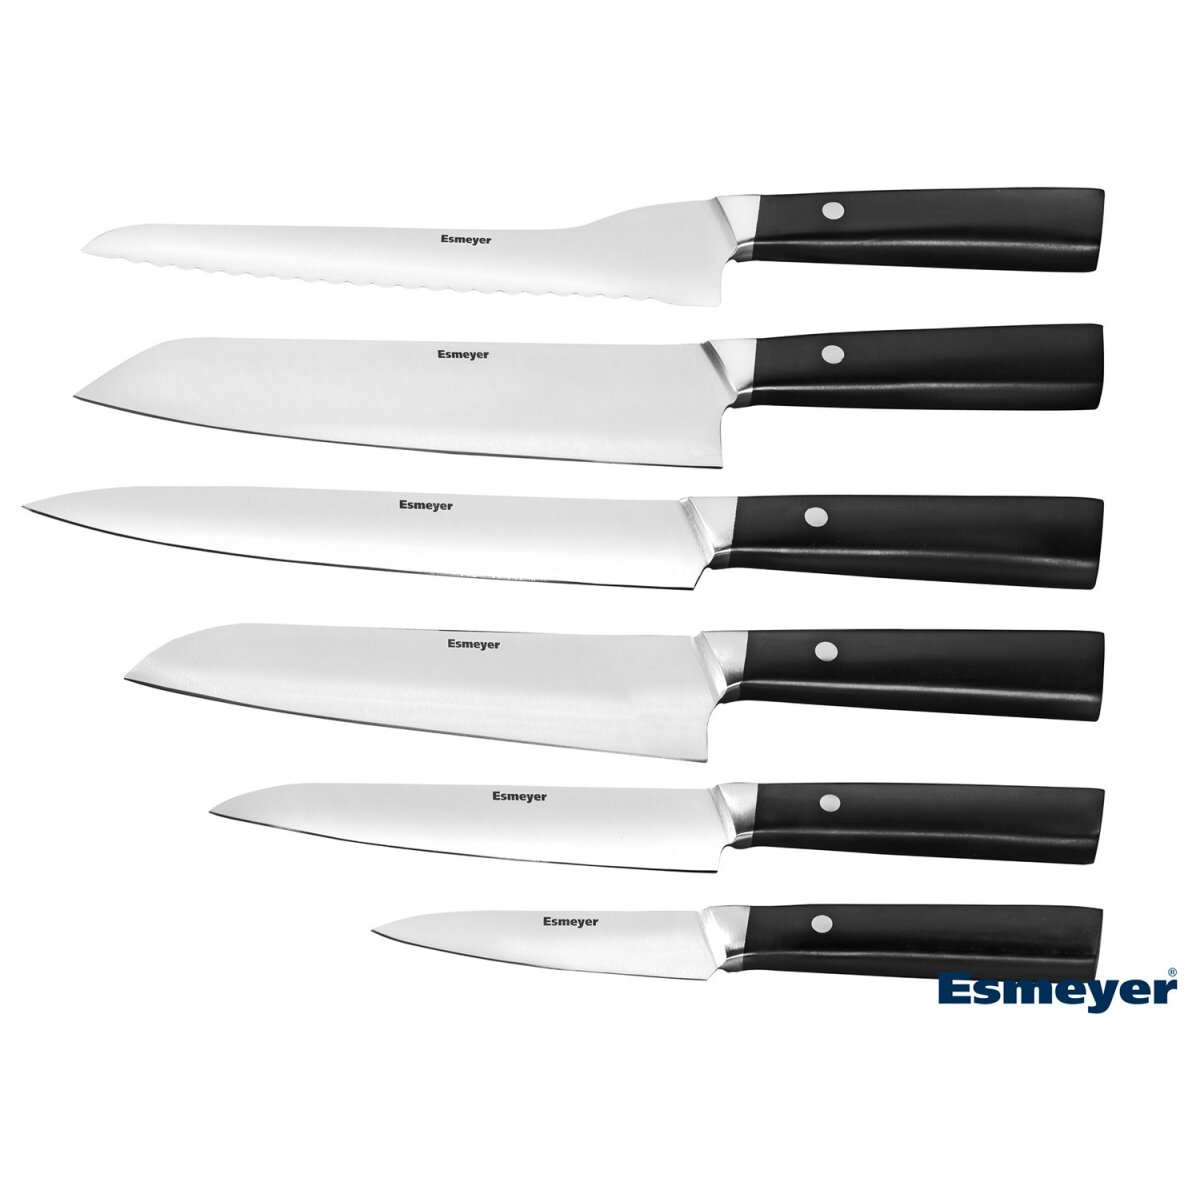 Asia € Edelstahl 6-teilig Messerset B-Ware Esmeyer aus - 32,99 neuwertig,